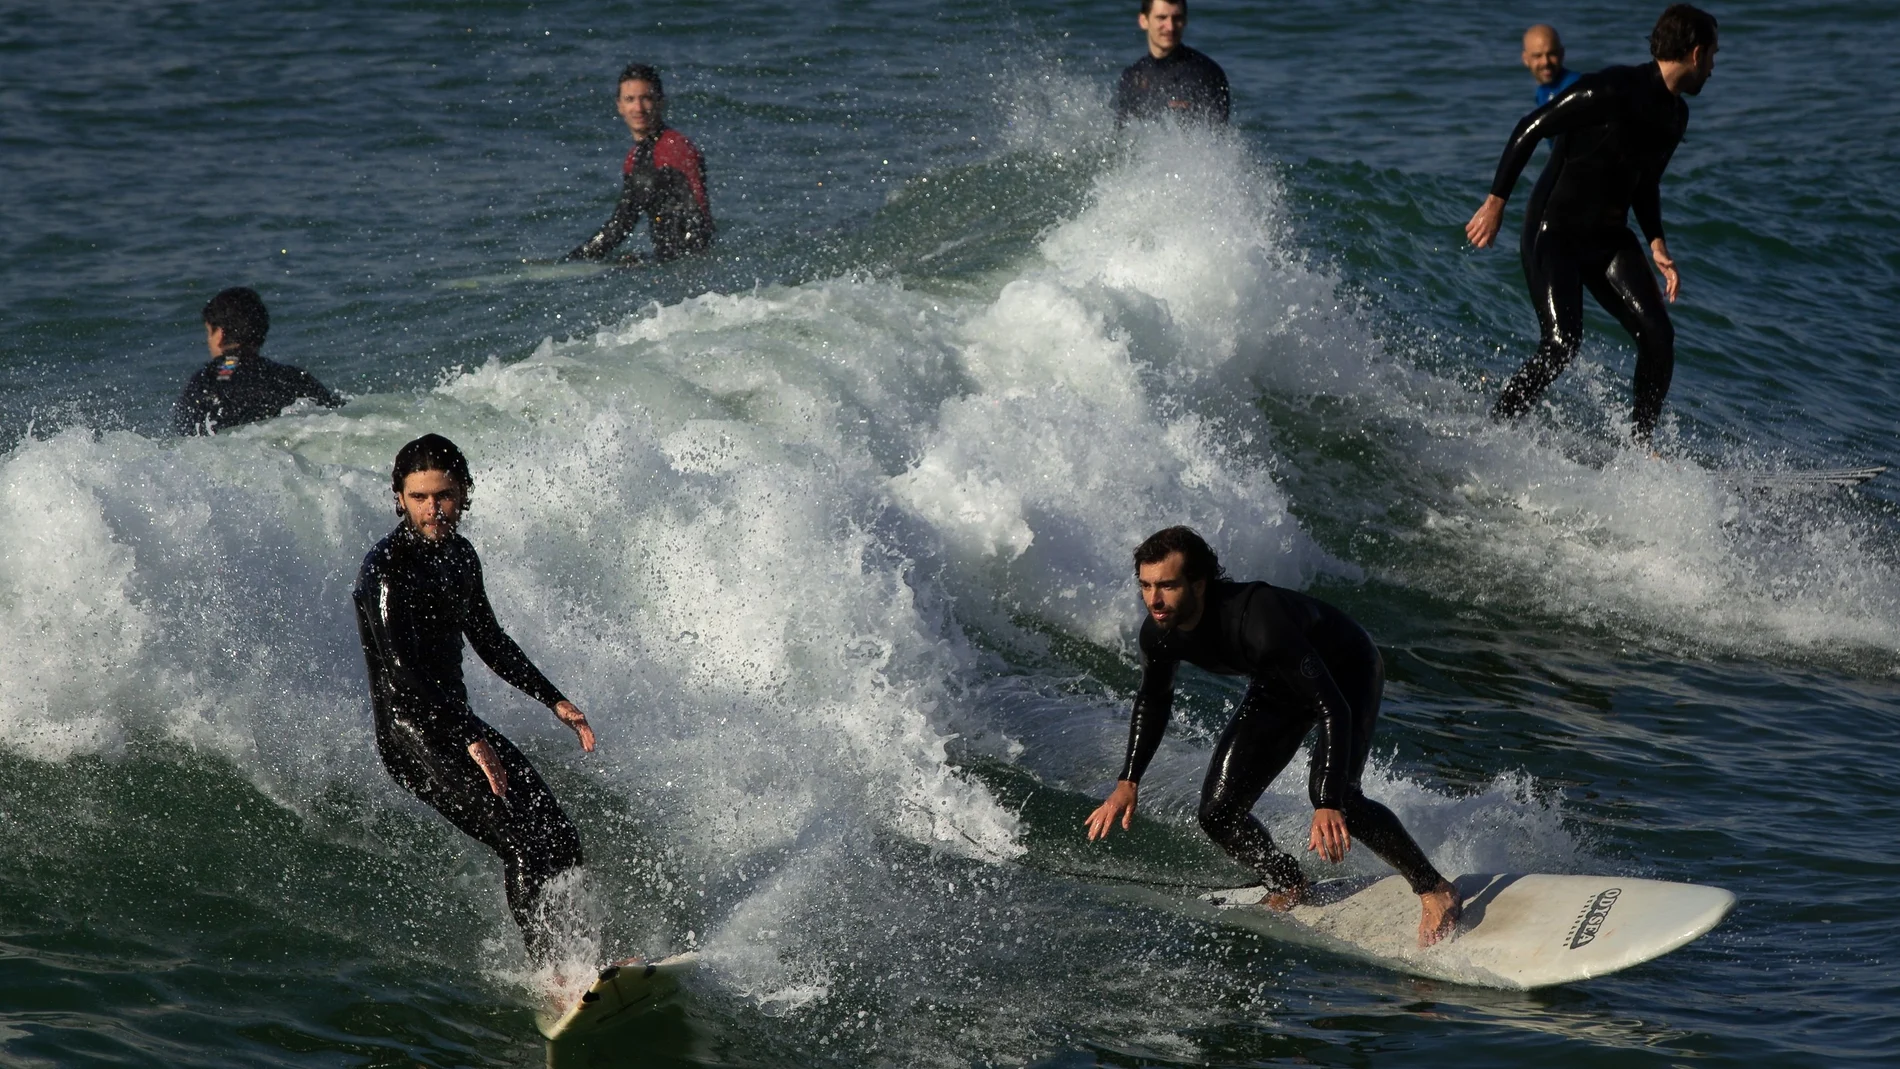 Decenas de surfistas practican su deporte favorito en las playas de Barcelona durante la Fase 0 de la desescalada. EFE/Enric Fontcuberta